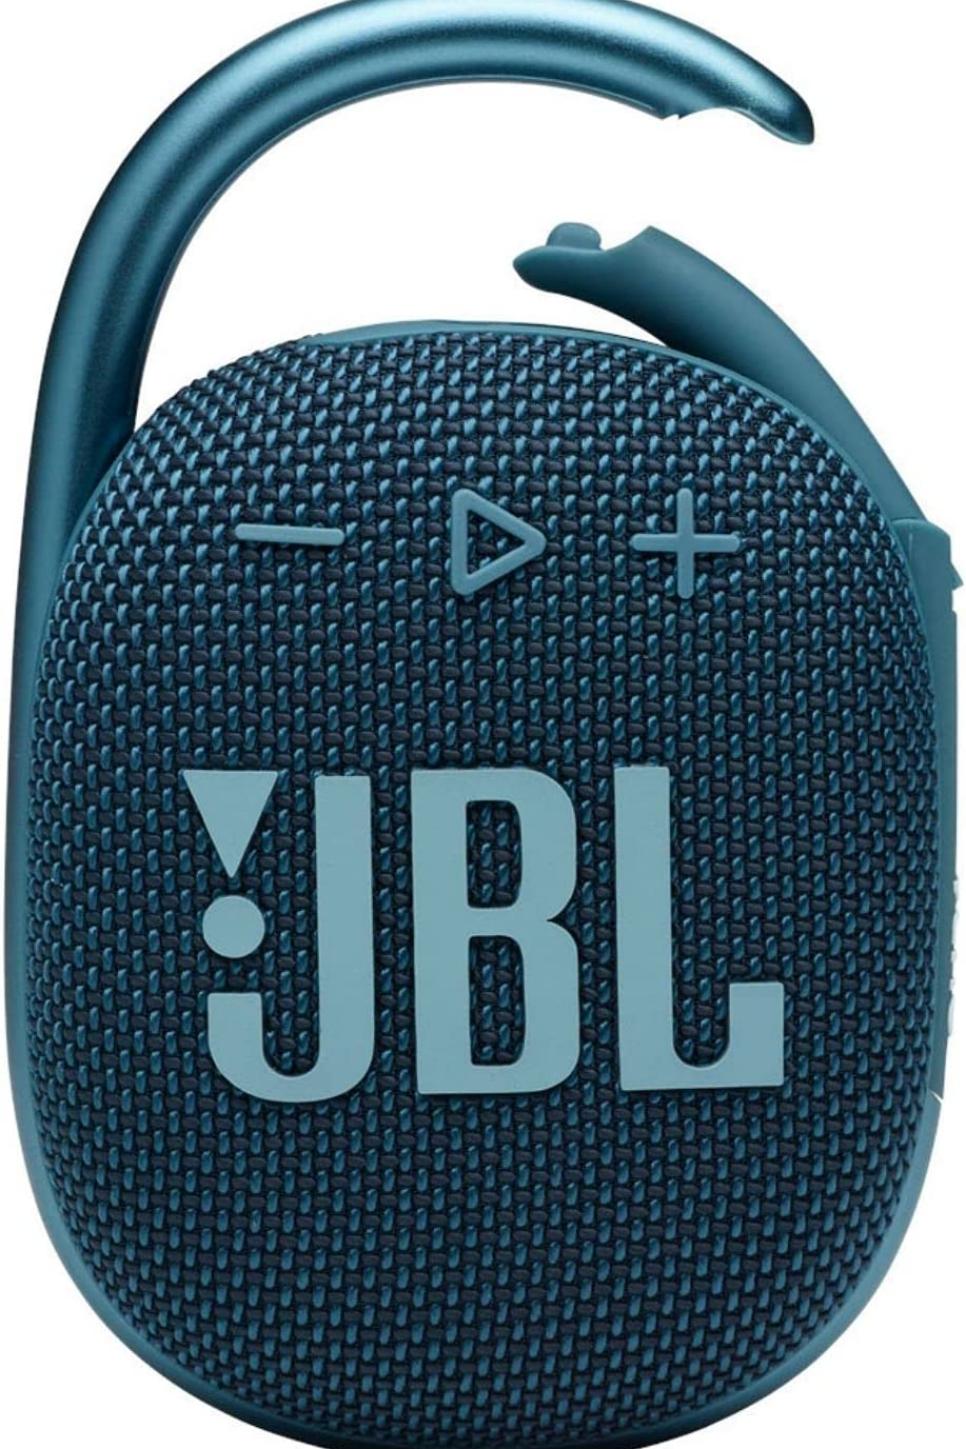 rx-jbljbl-clip-4-bluetooth-speaker.jpeg